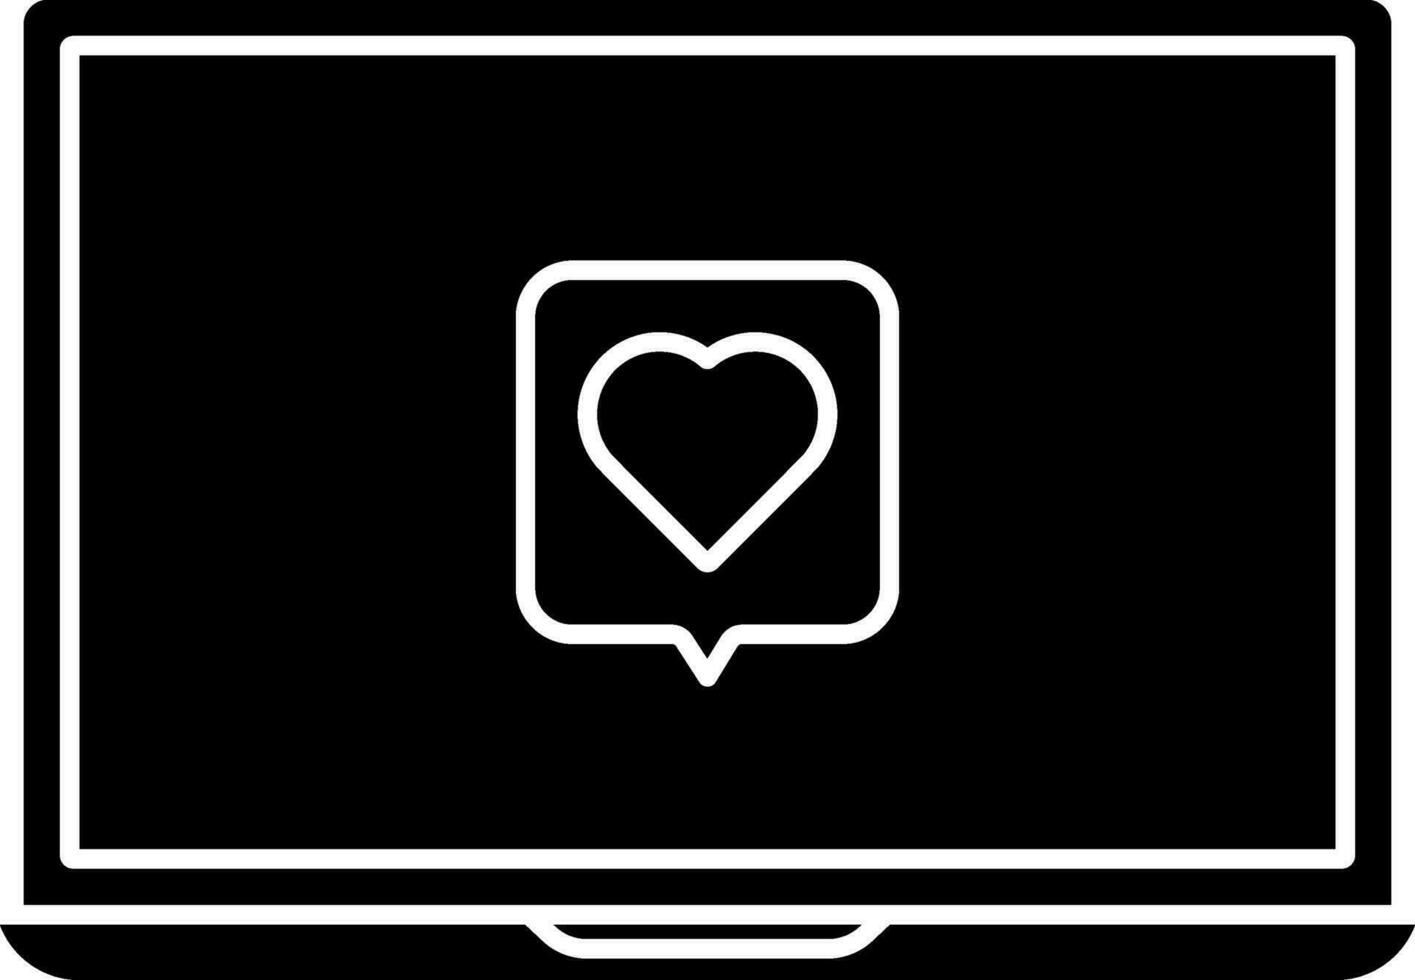 kärlek eller favorit meddelande i bärbar dator ikon. vektor